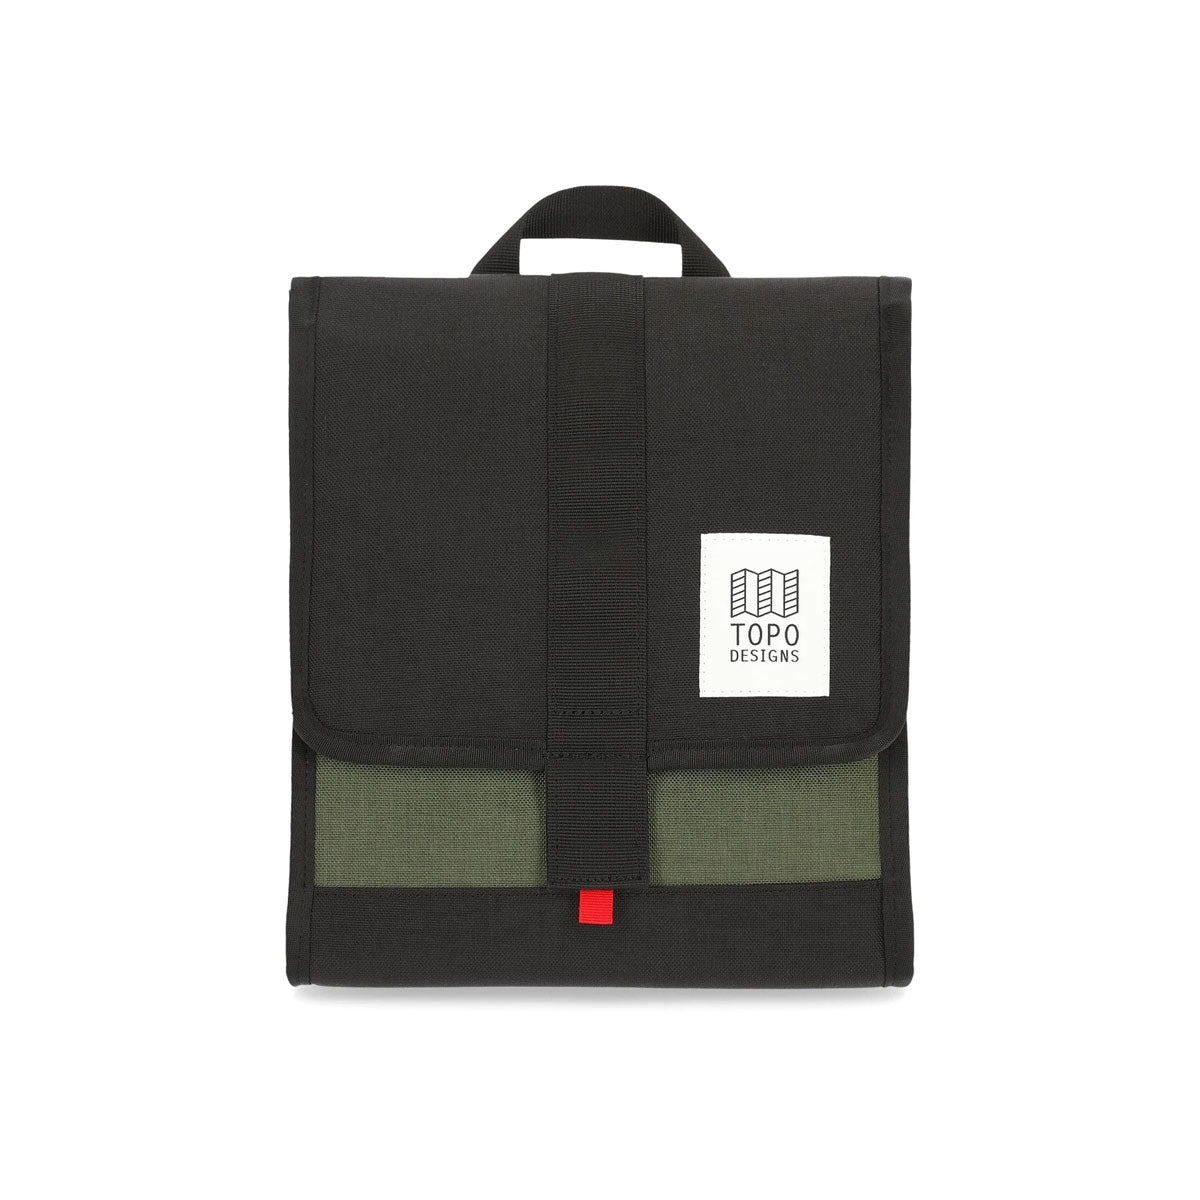 Topo Designs : Cooler Bag : Olive/Black